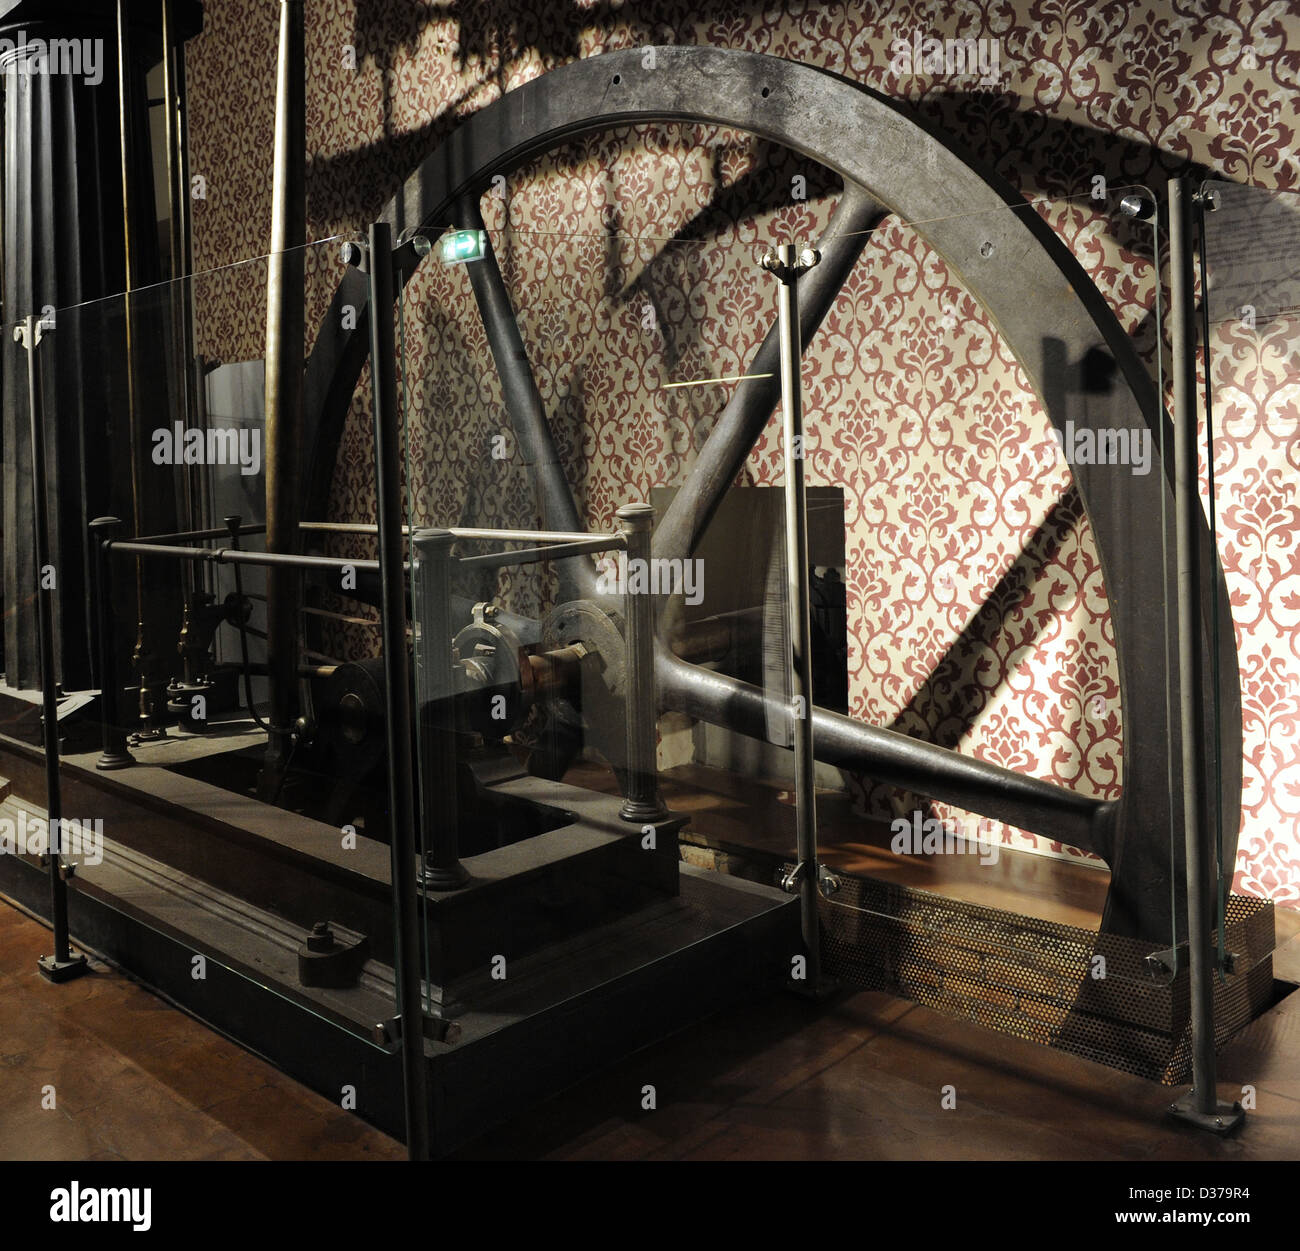 Thomas Horn Dampfmaschine, gebaut um 1850 von dem Ingenieur Thos. Horn. Wärmeenergie in Bewegungsenergie zu verwandeln. Stockfoto